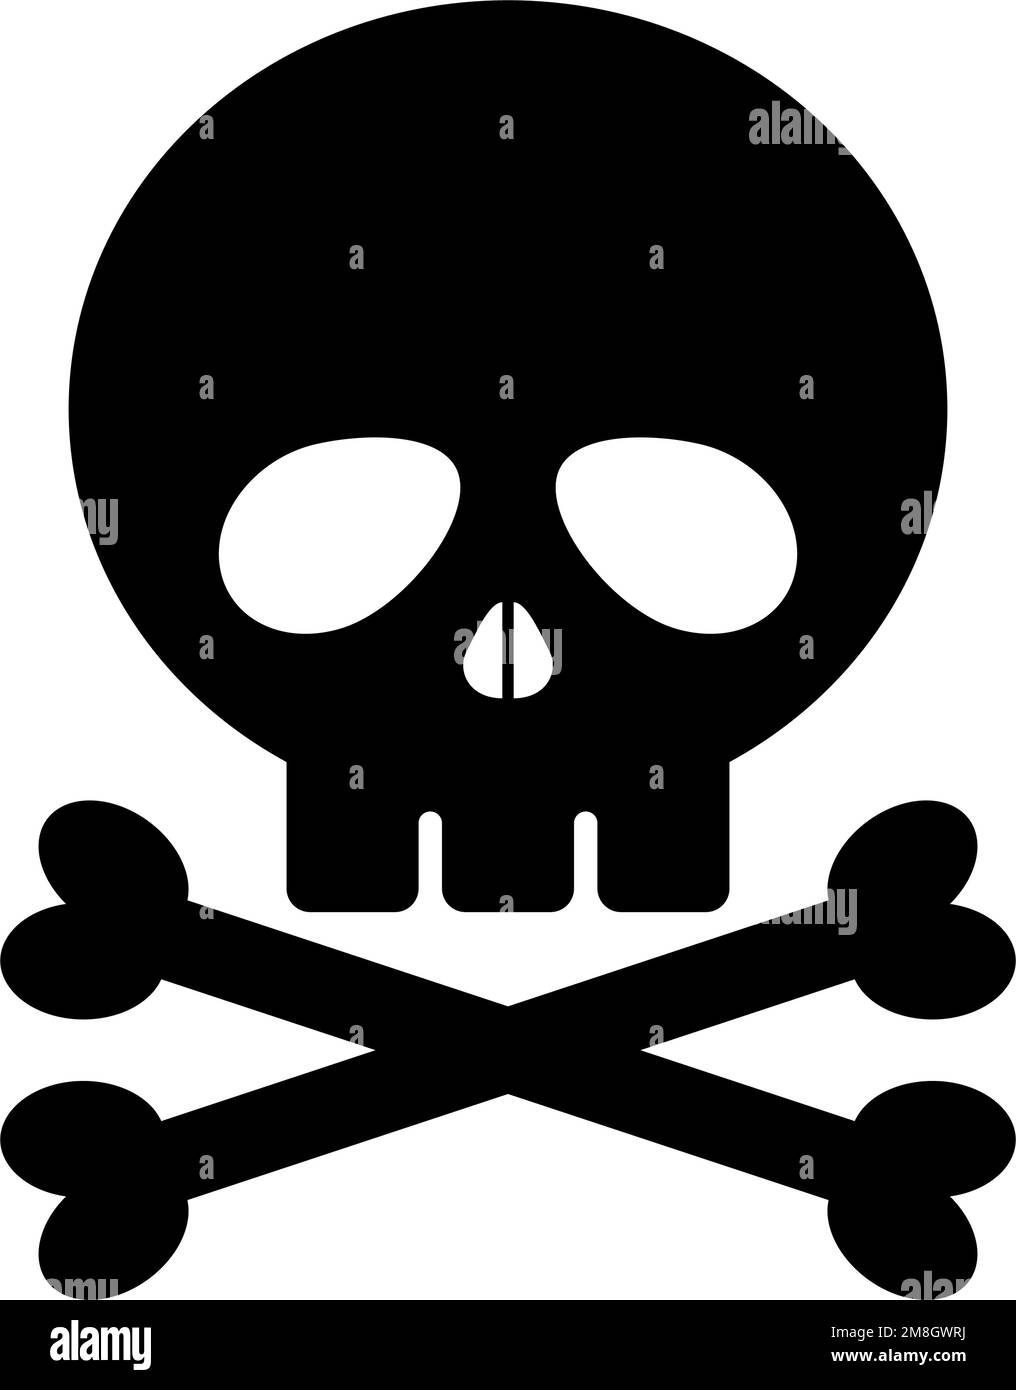 Skull and Cross Bones Cutout, Zazzle